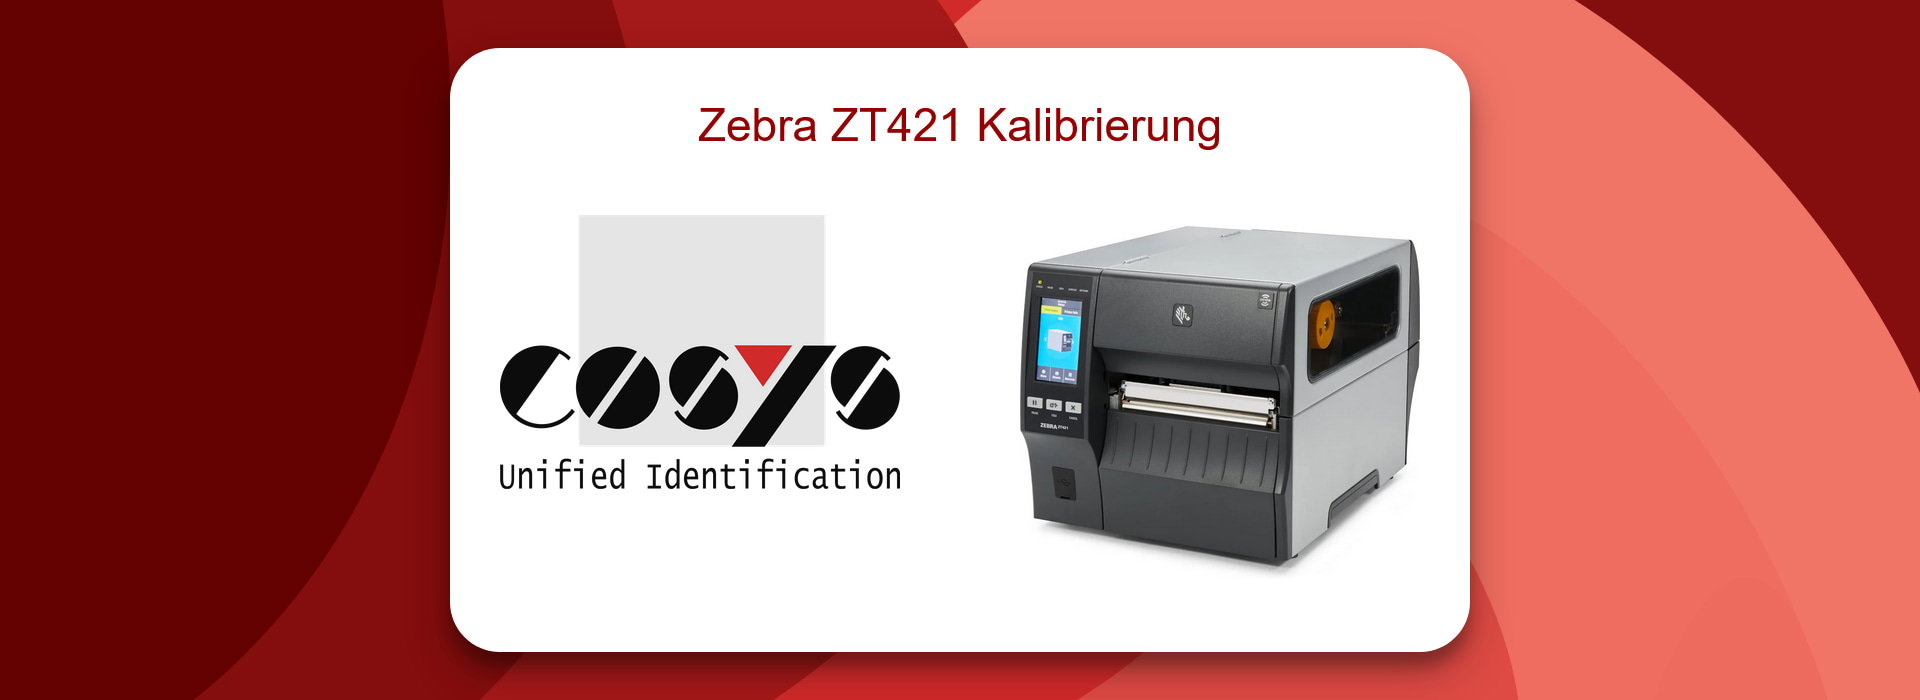 Zebra ZT421: Kalibrierung für perfekten Druck